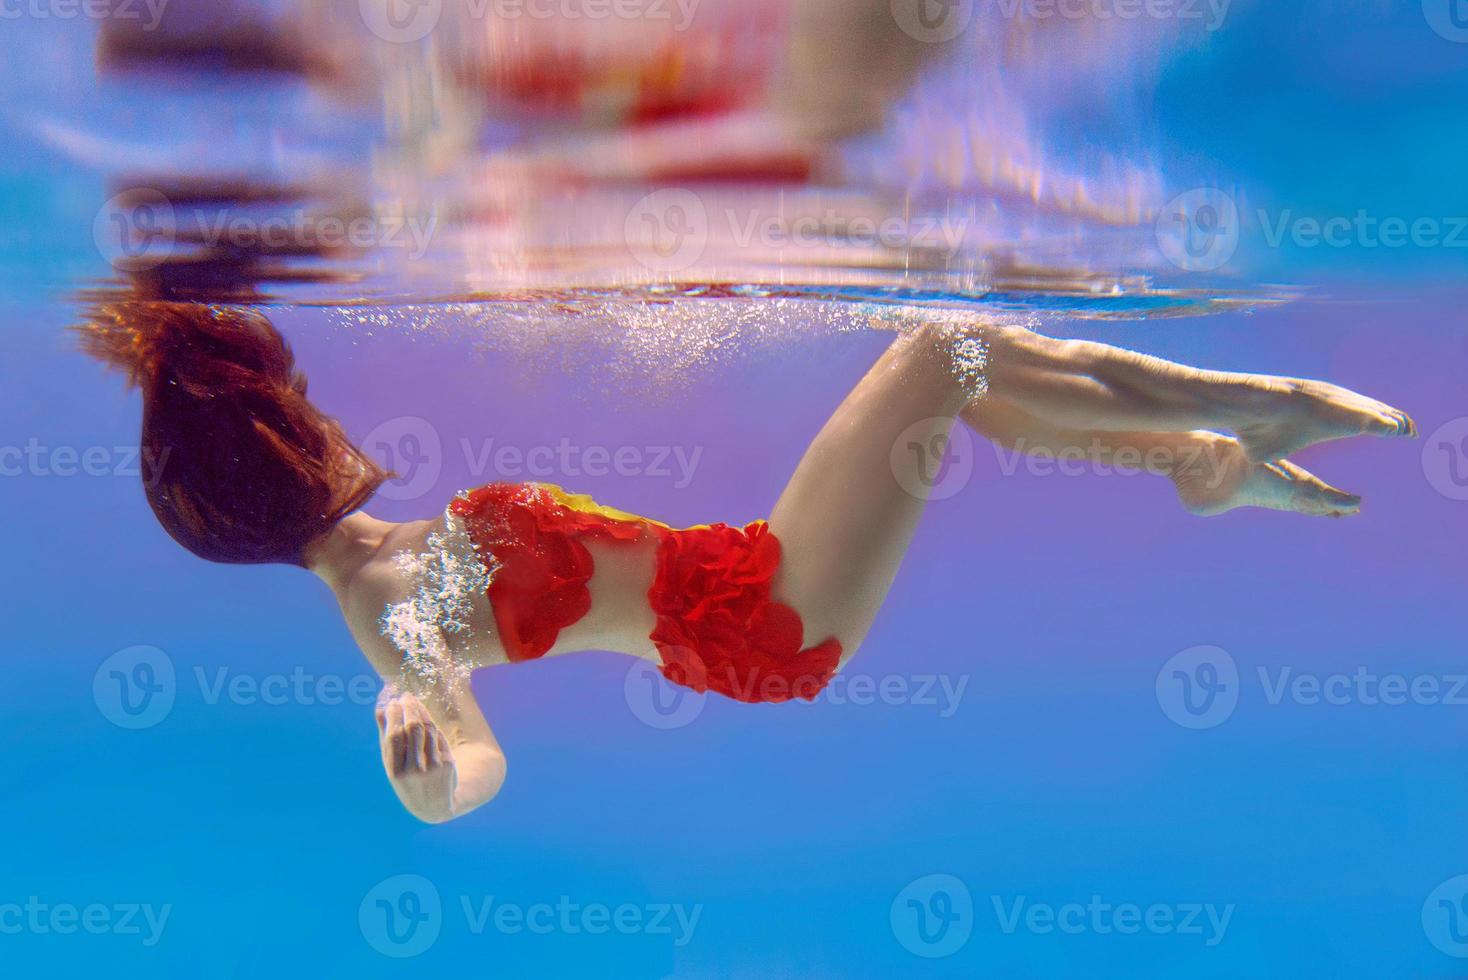 incredibile, surreale, incredibile, incredibile ritratto subacqueo di donna snella e in forma in costume da bagno arancione brillante foto